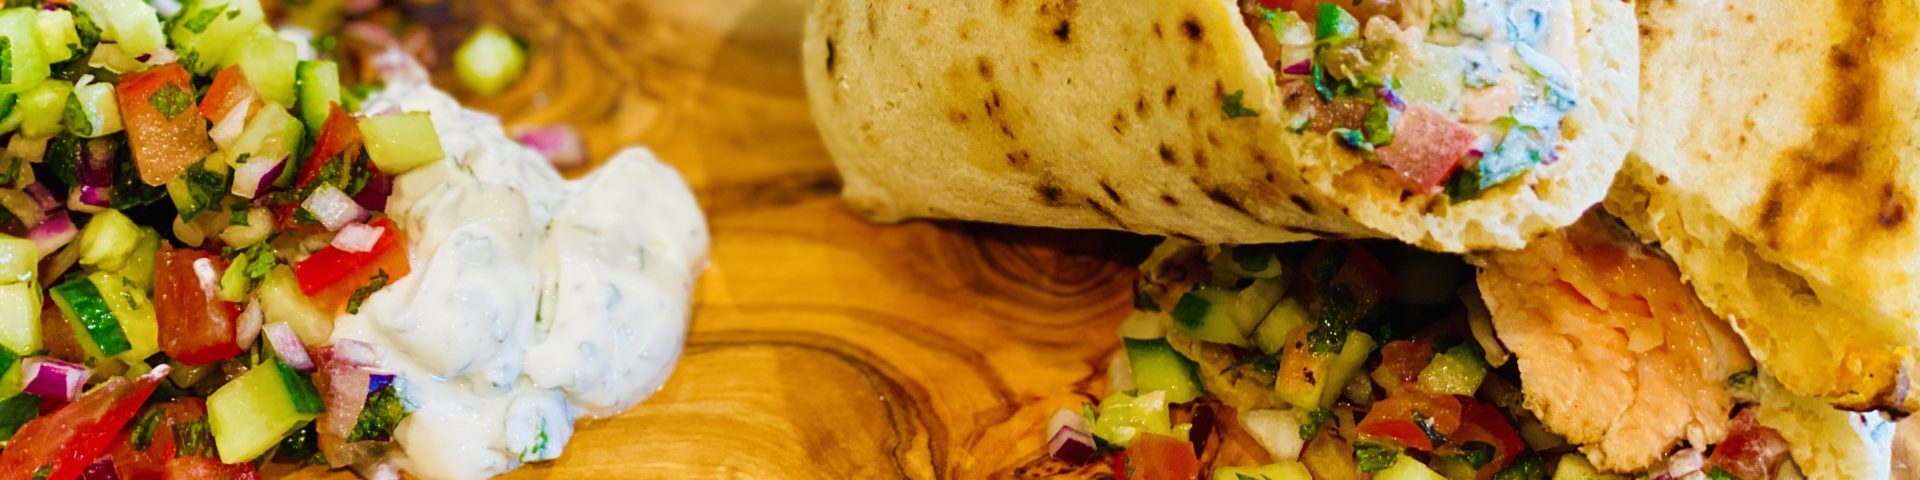 Tandoori Salmon Naan Wrap Recipe - The Food Beaver